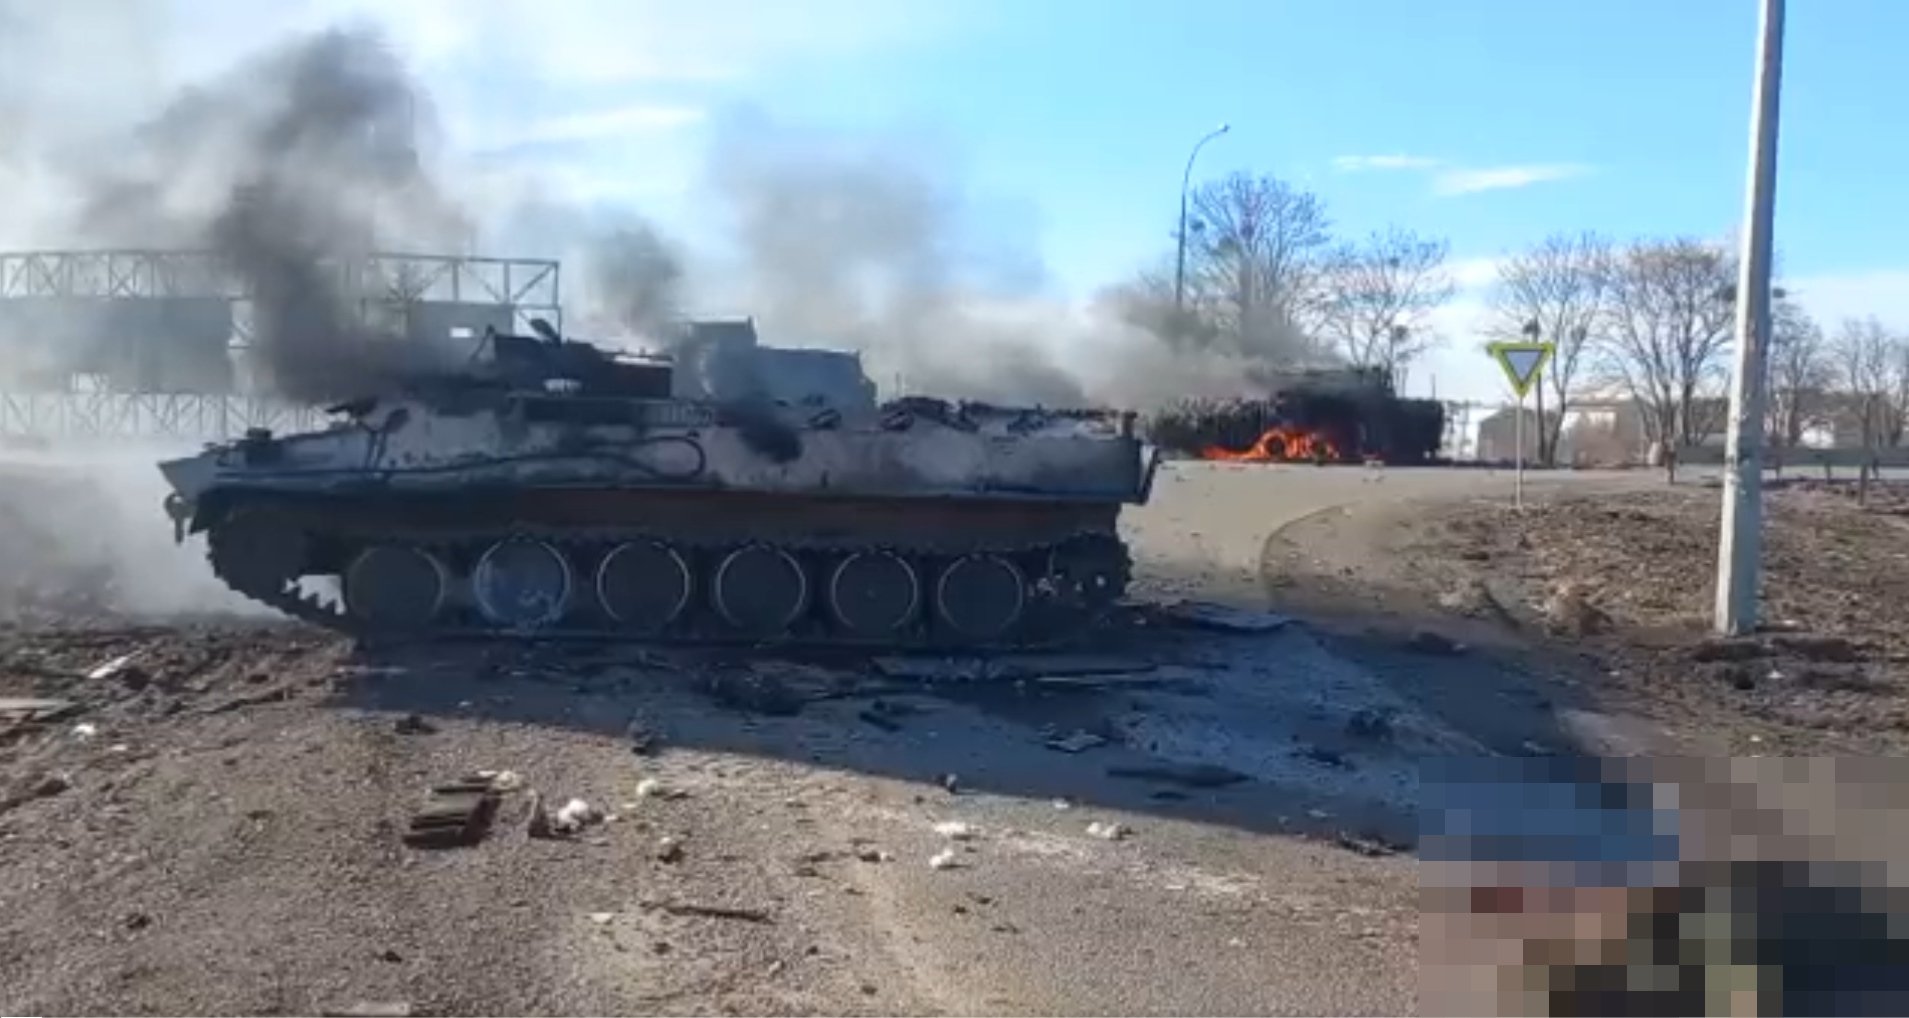  VIDEO: Armata ucraineană a capturat o unitate de elită a armatei ruse în apropiere de Harkiv, în Ucraina. ATENȚIE! Imagini cu conținut explicit!